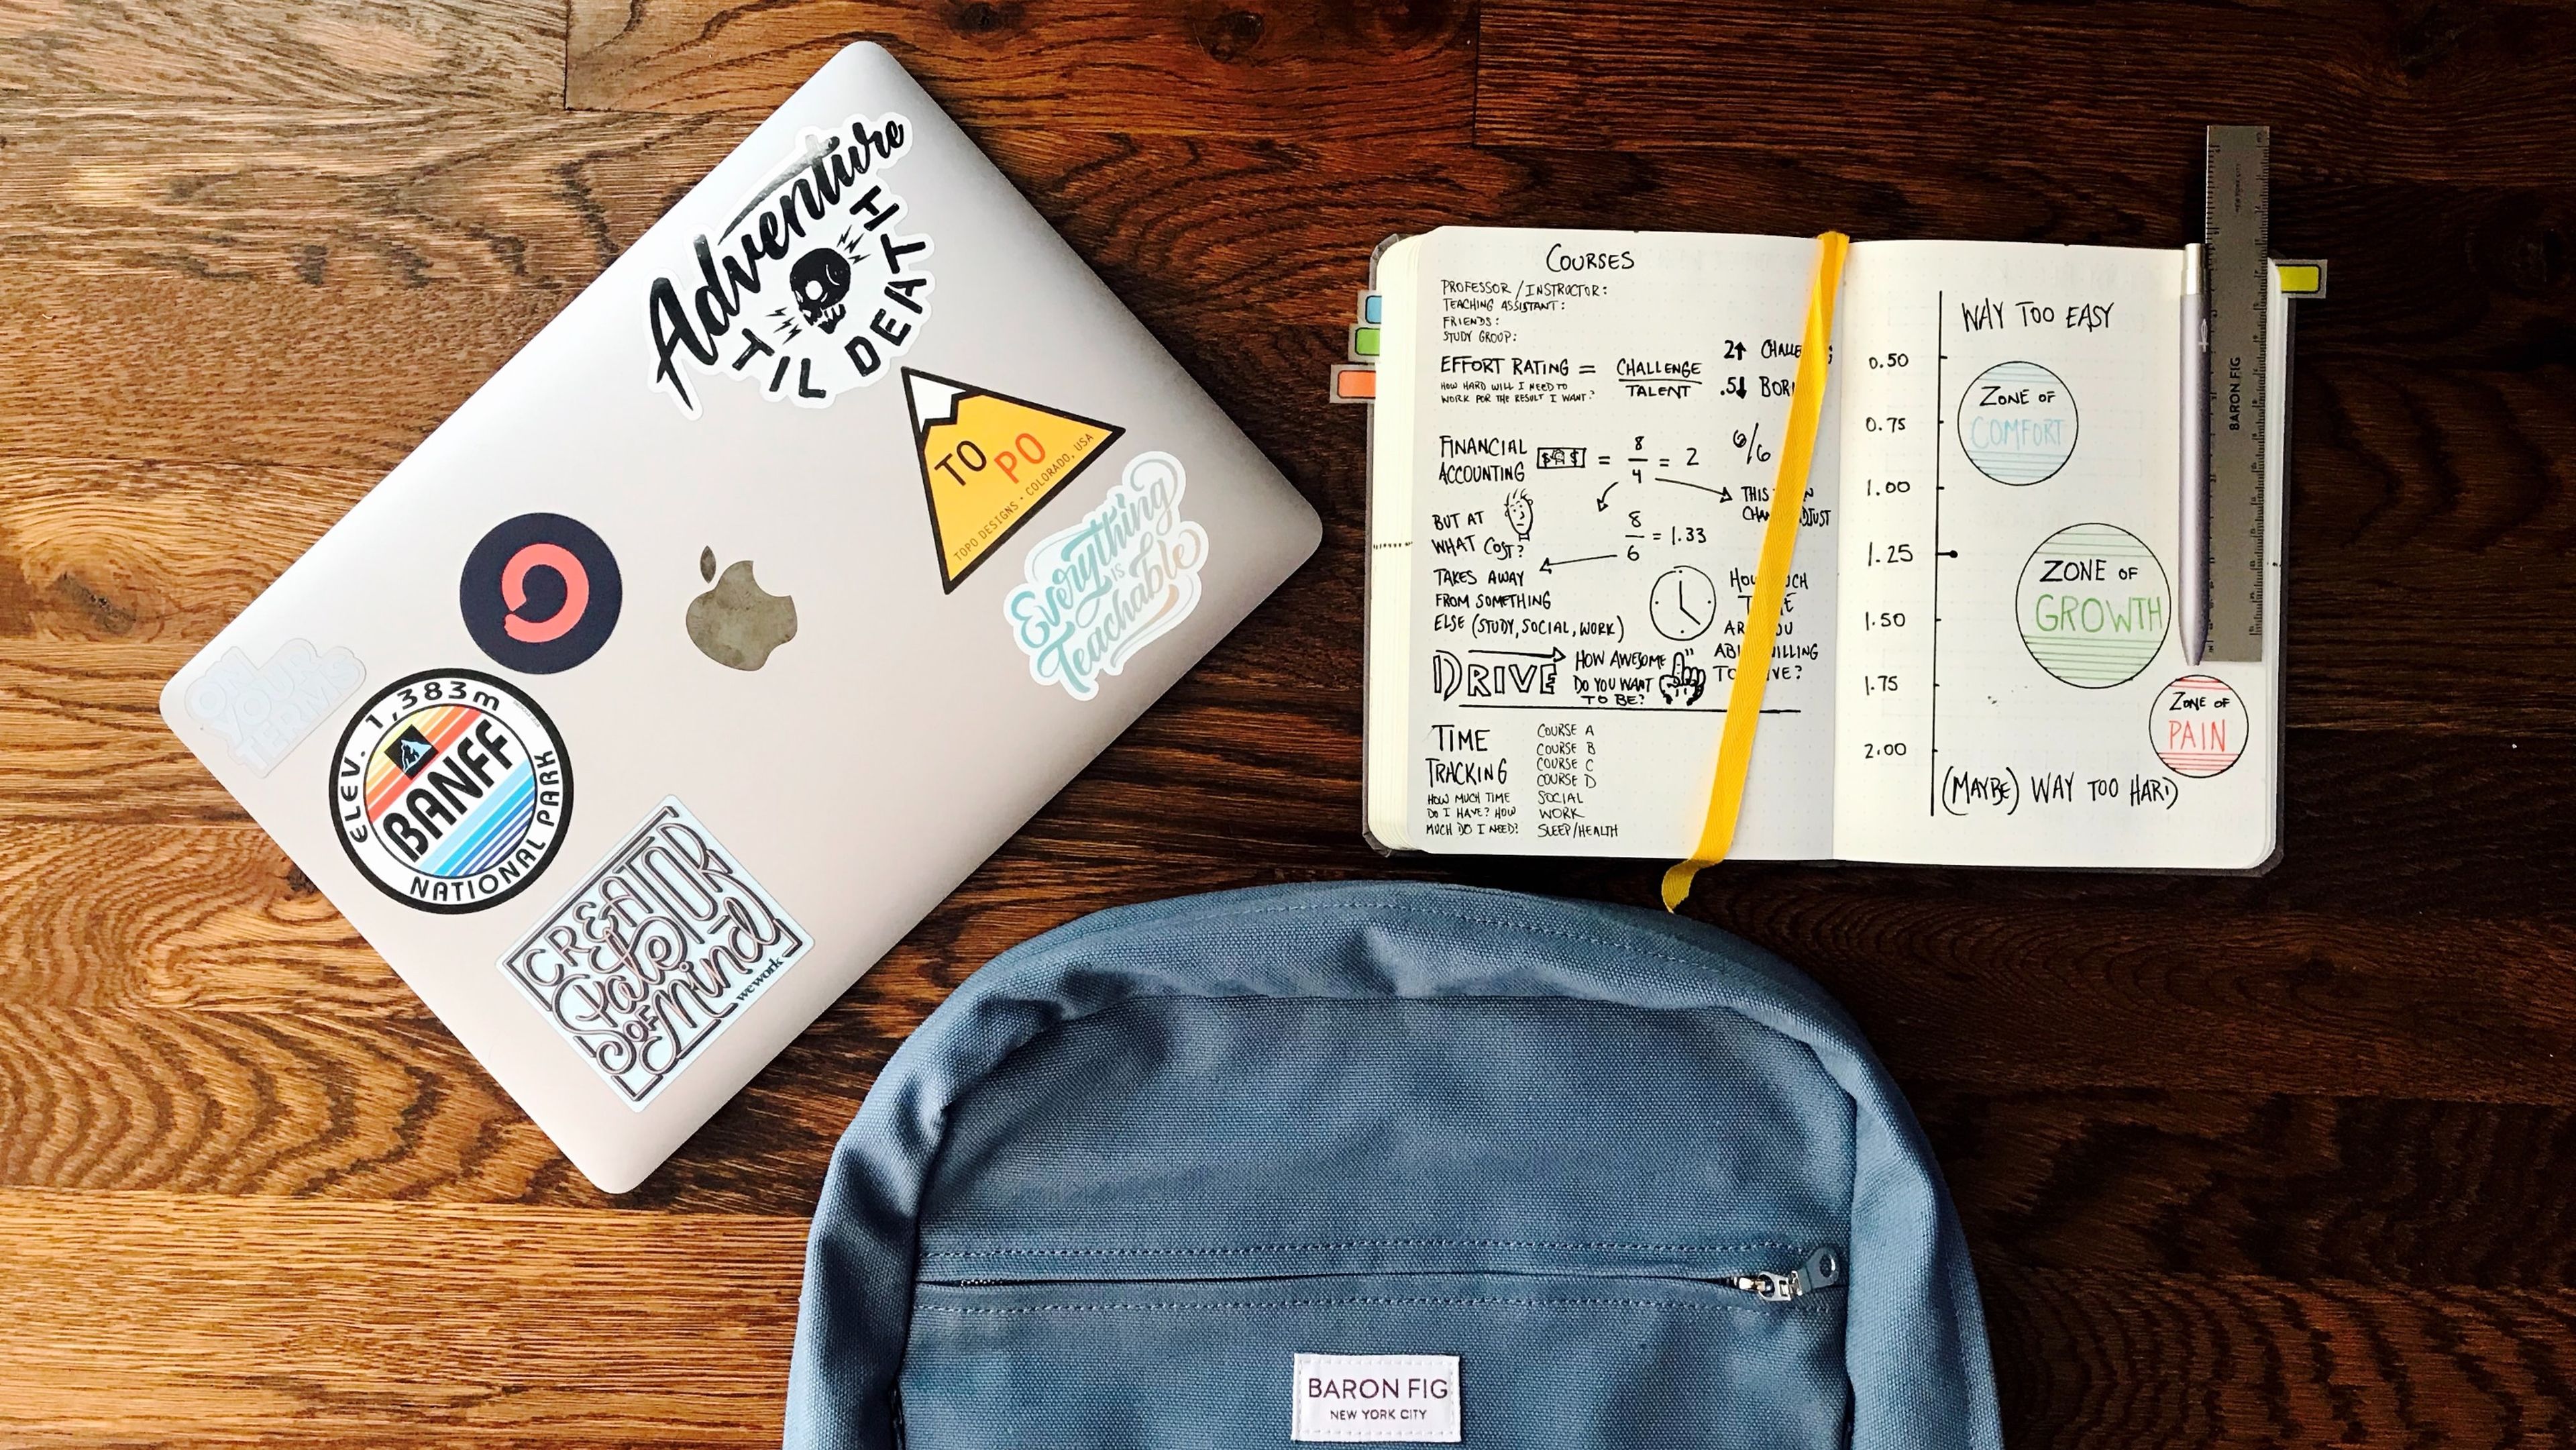 Portátil, cuaderno de notas y mochila posadas sobre una mesa de madera